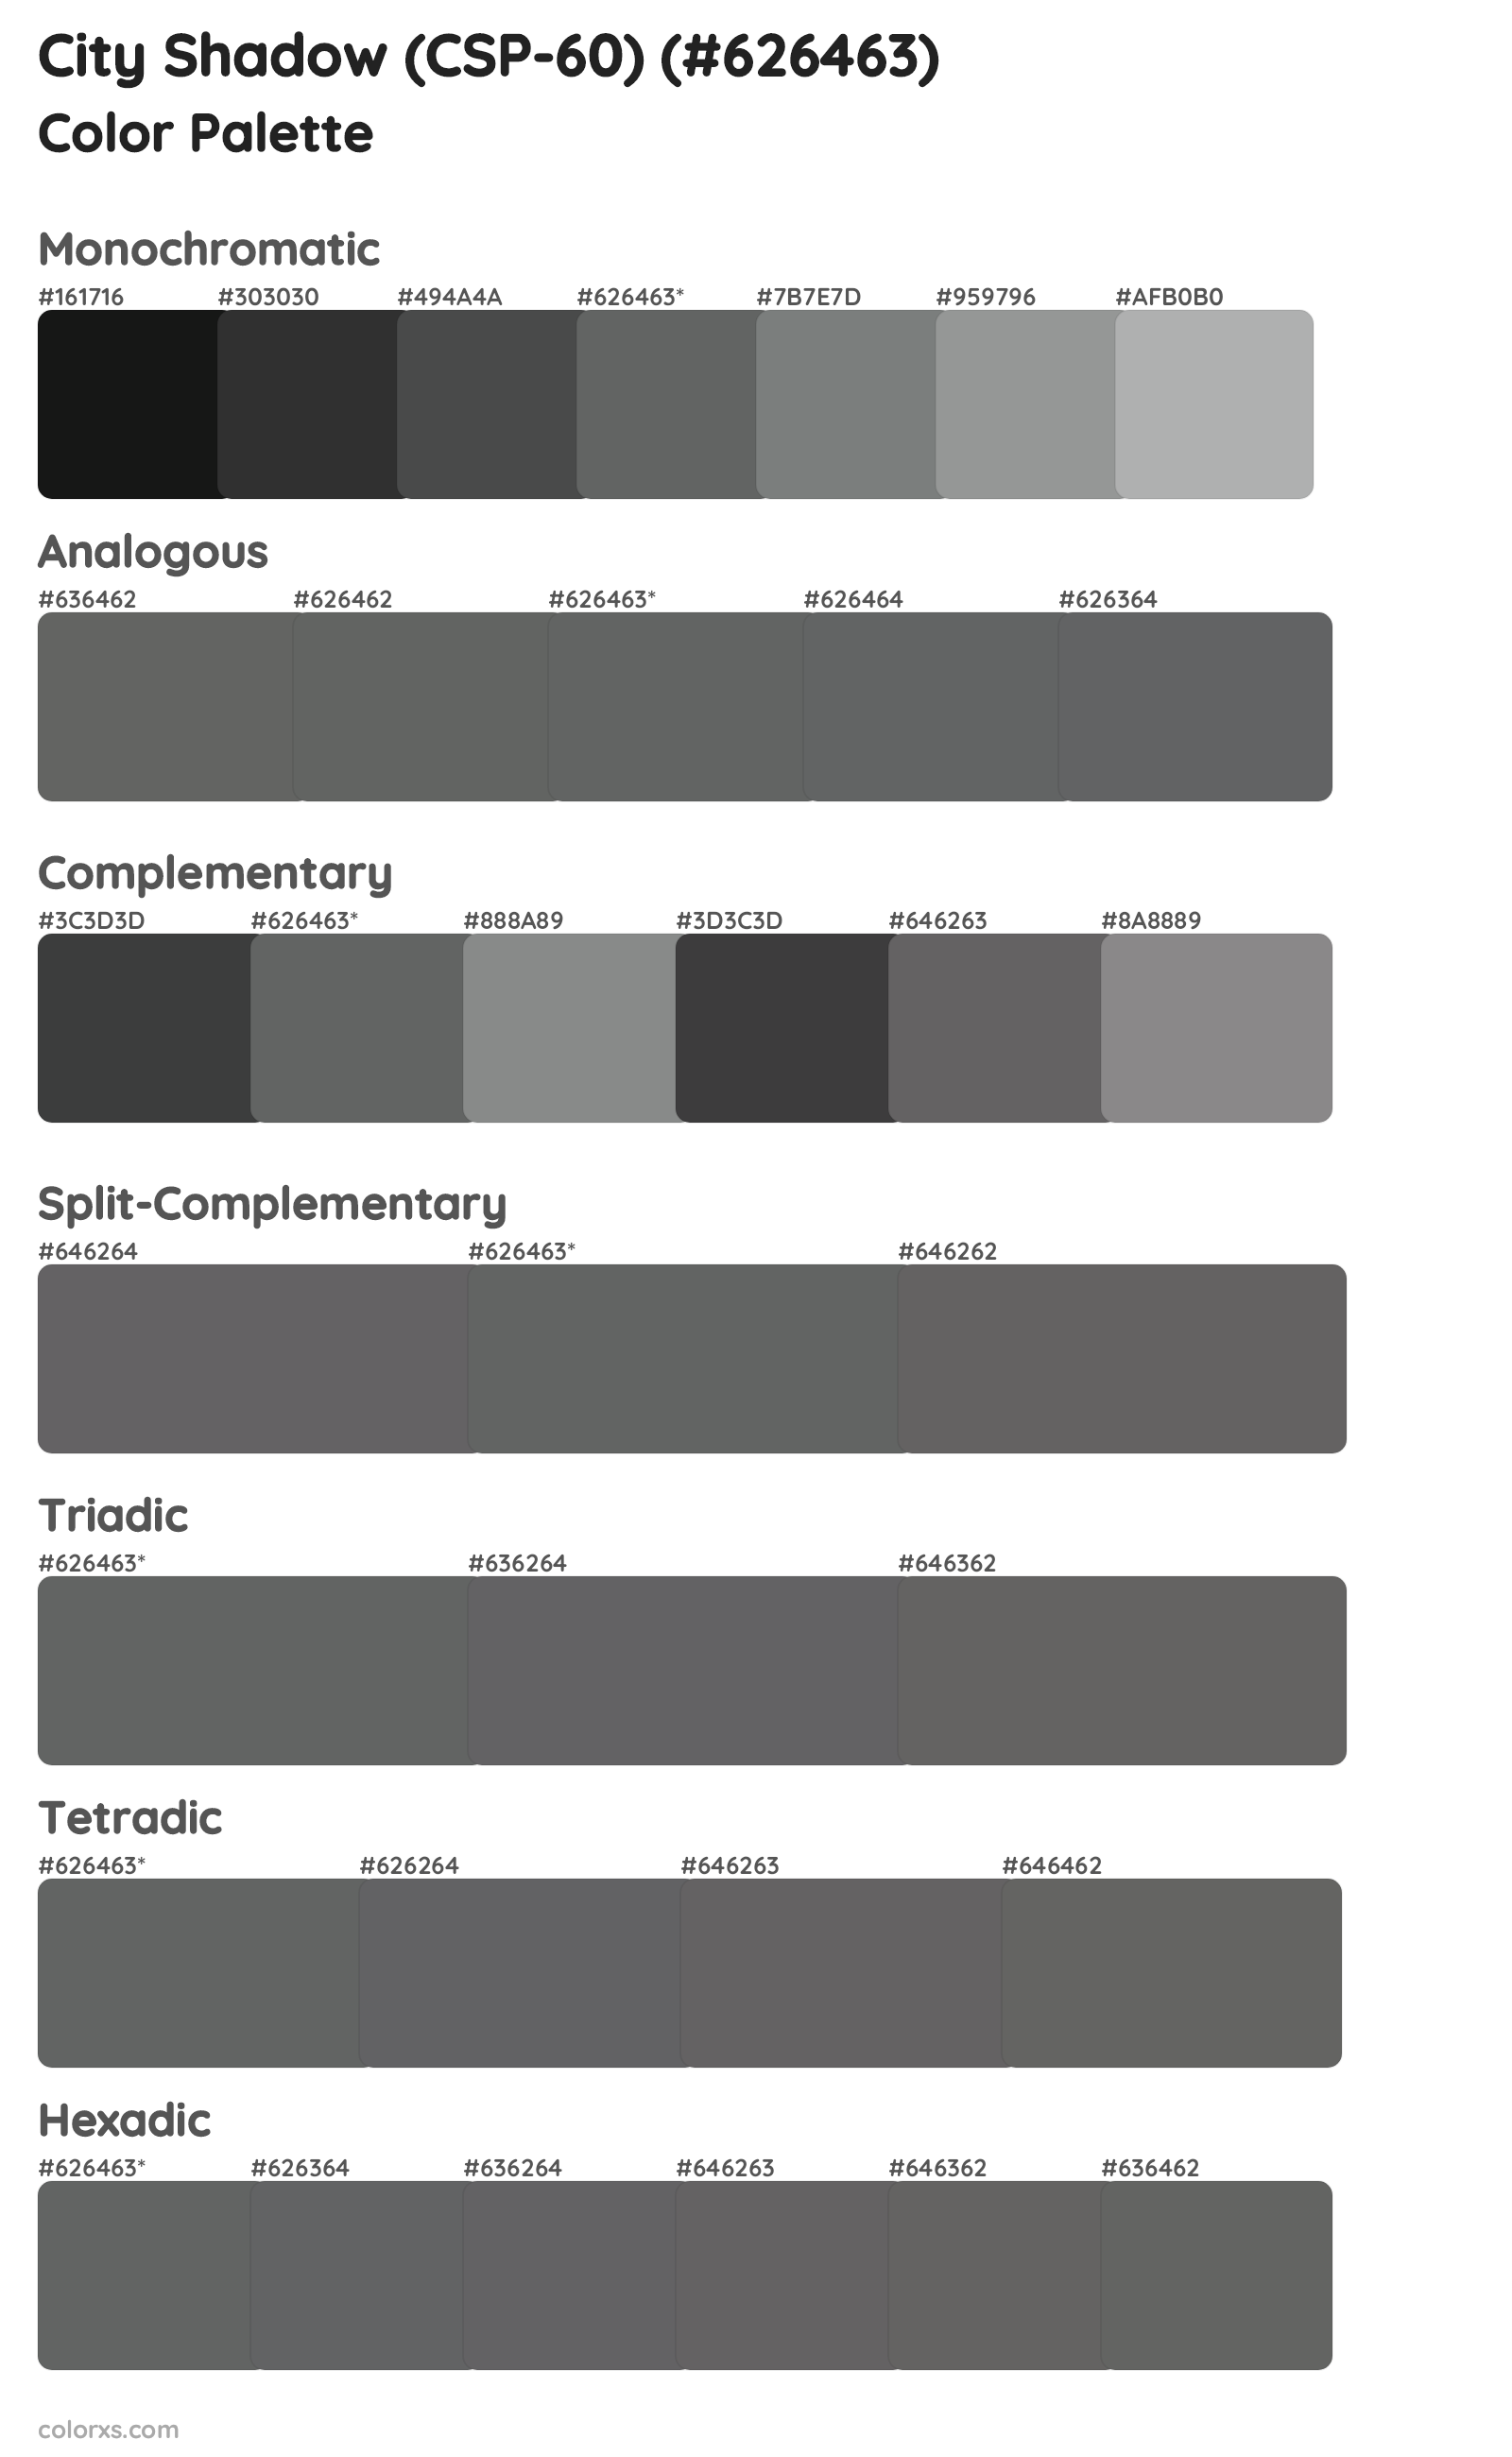 City Shadow (CSP-60) Color Scheme Palettes